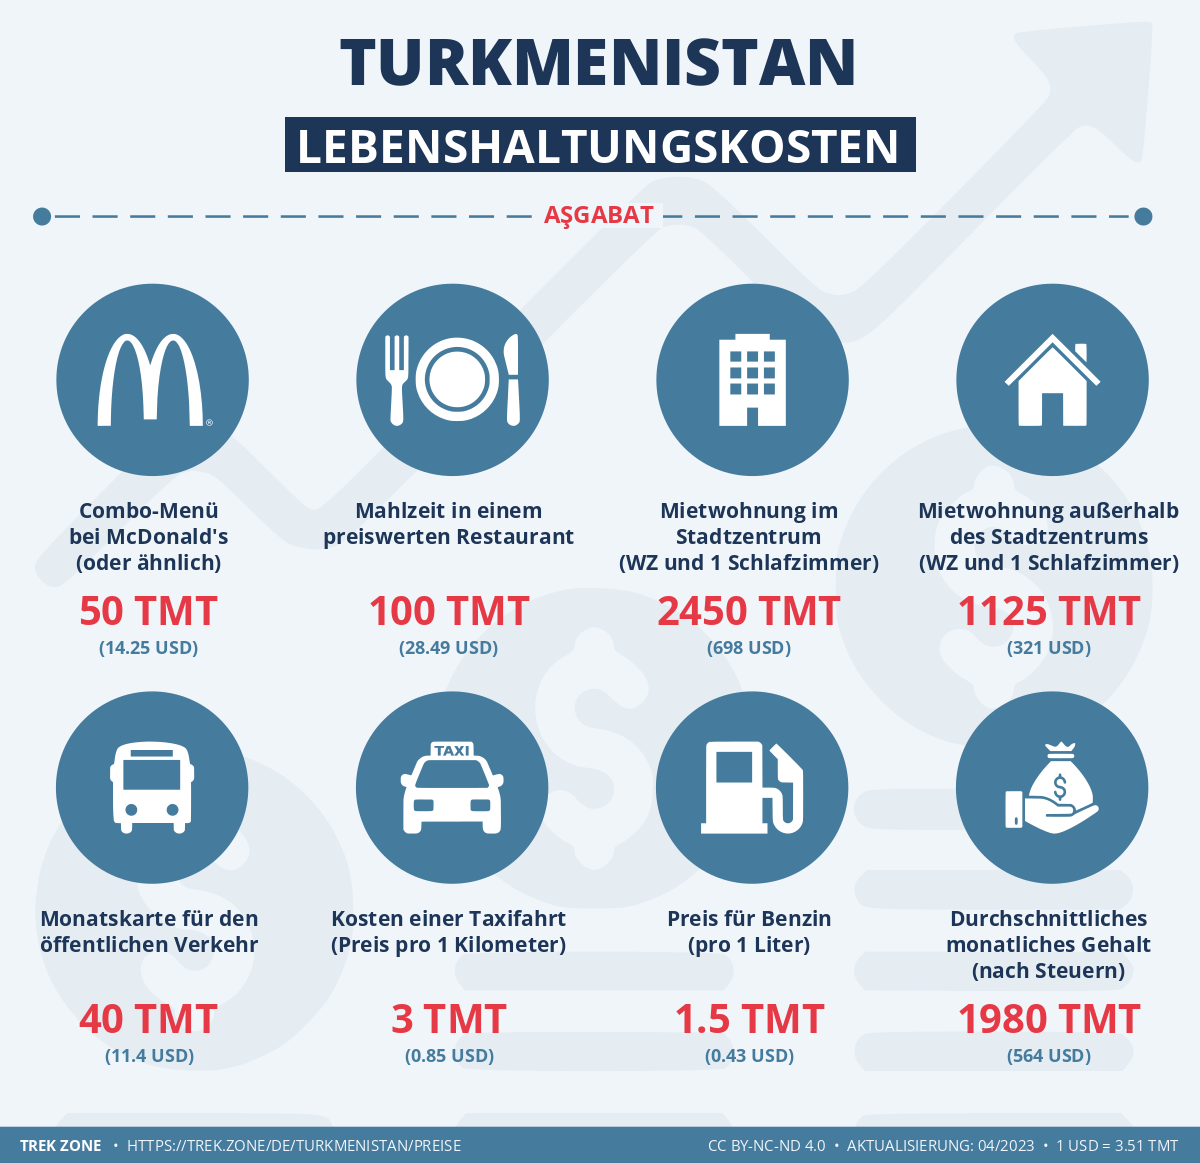 preise und lebenskosten turkmenistan